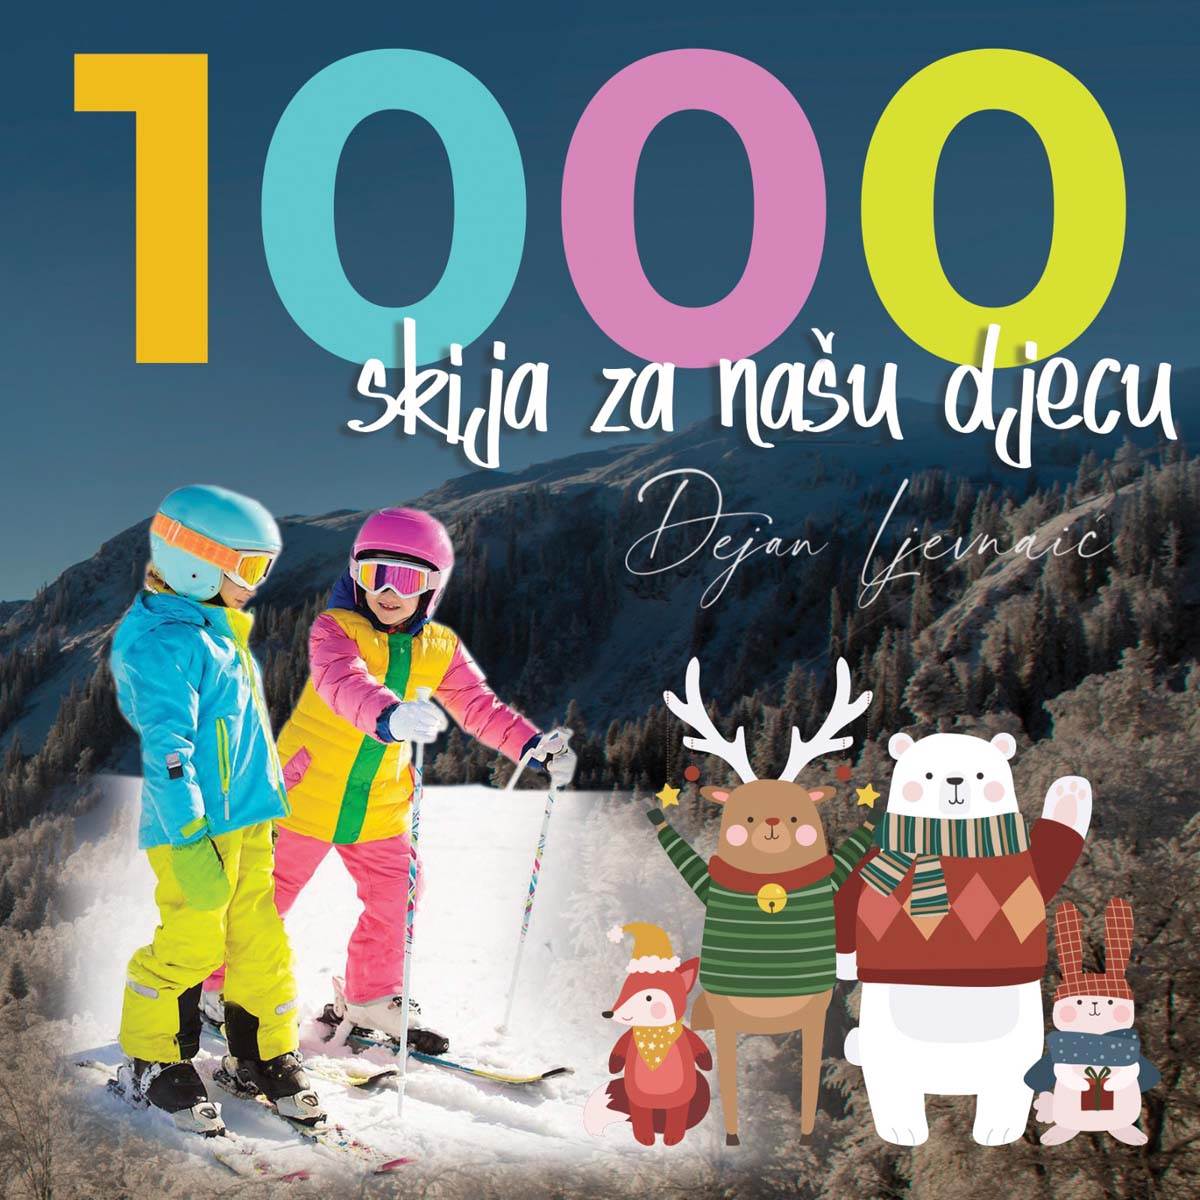  Istorijski uspjeh – Fanatičnim radom stvorili smo pravi skijaški raj na Jahorini 